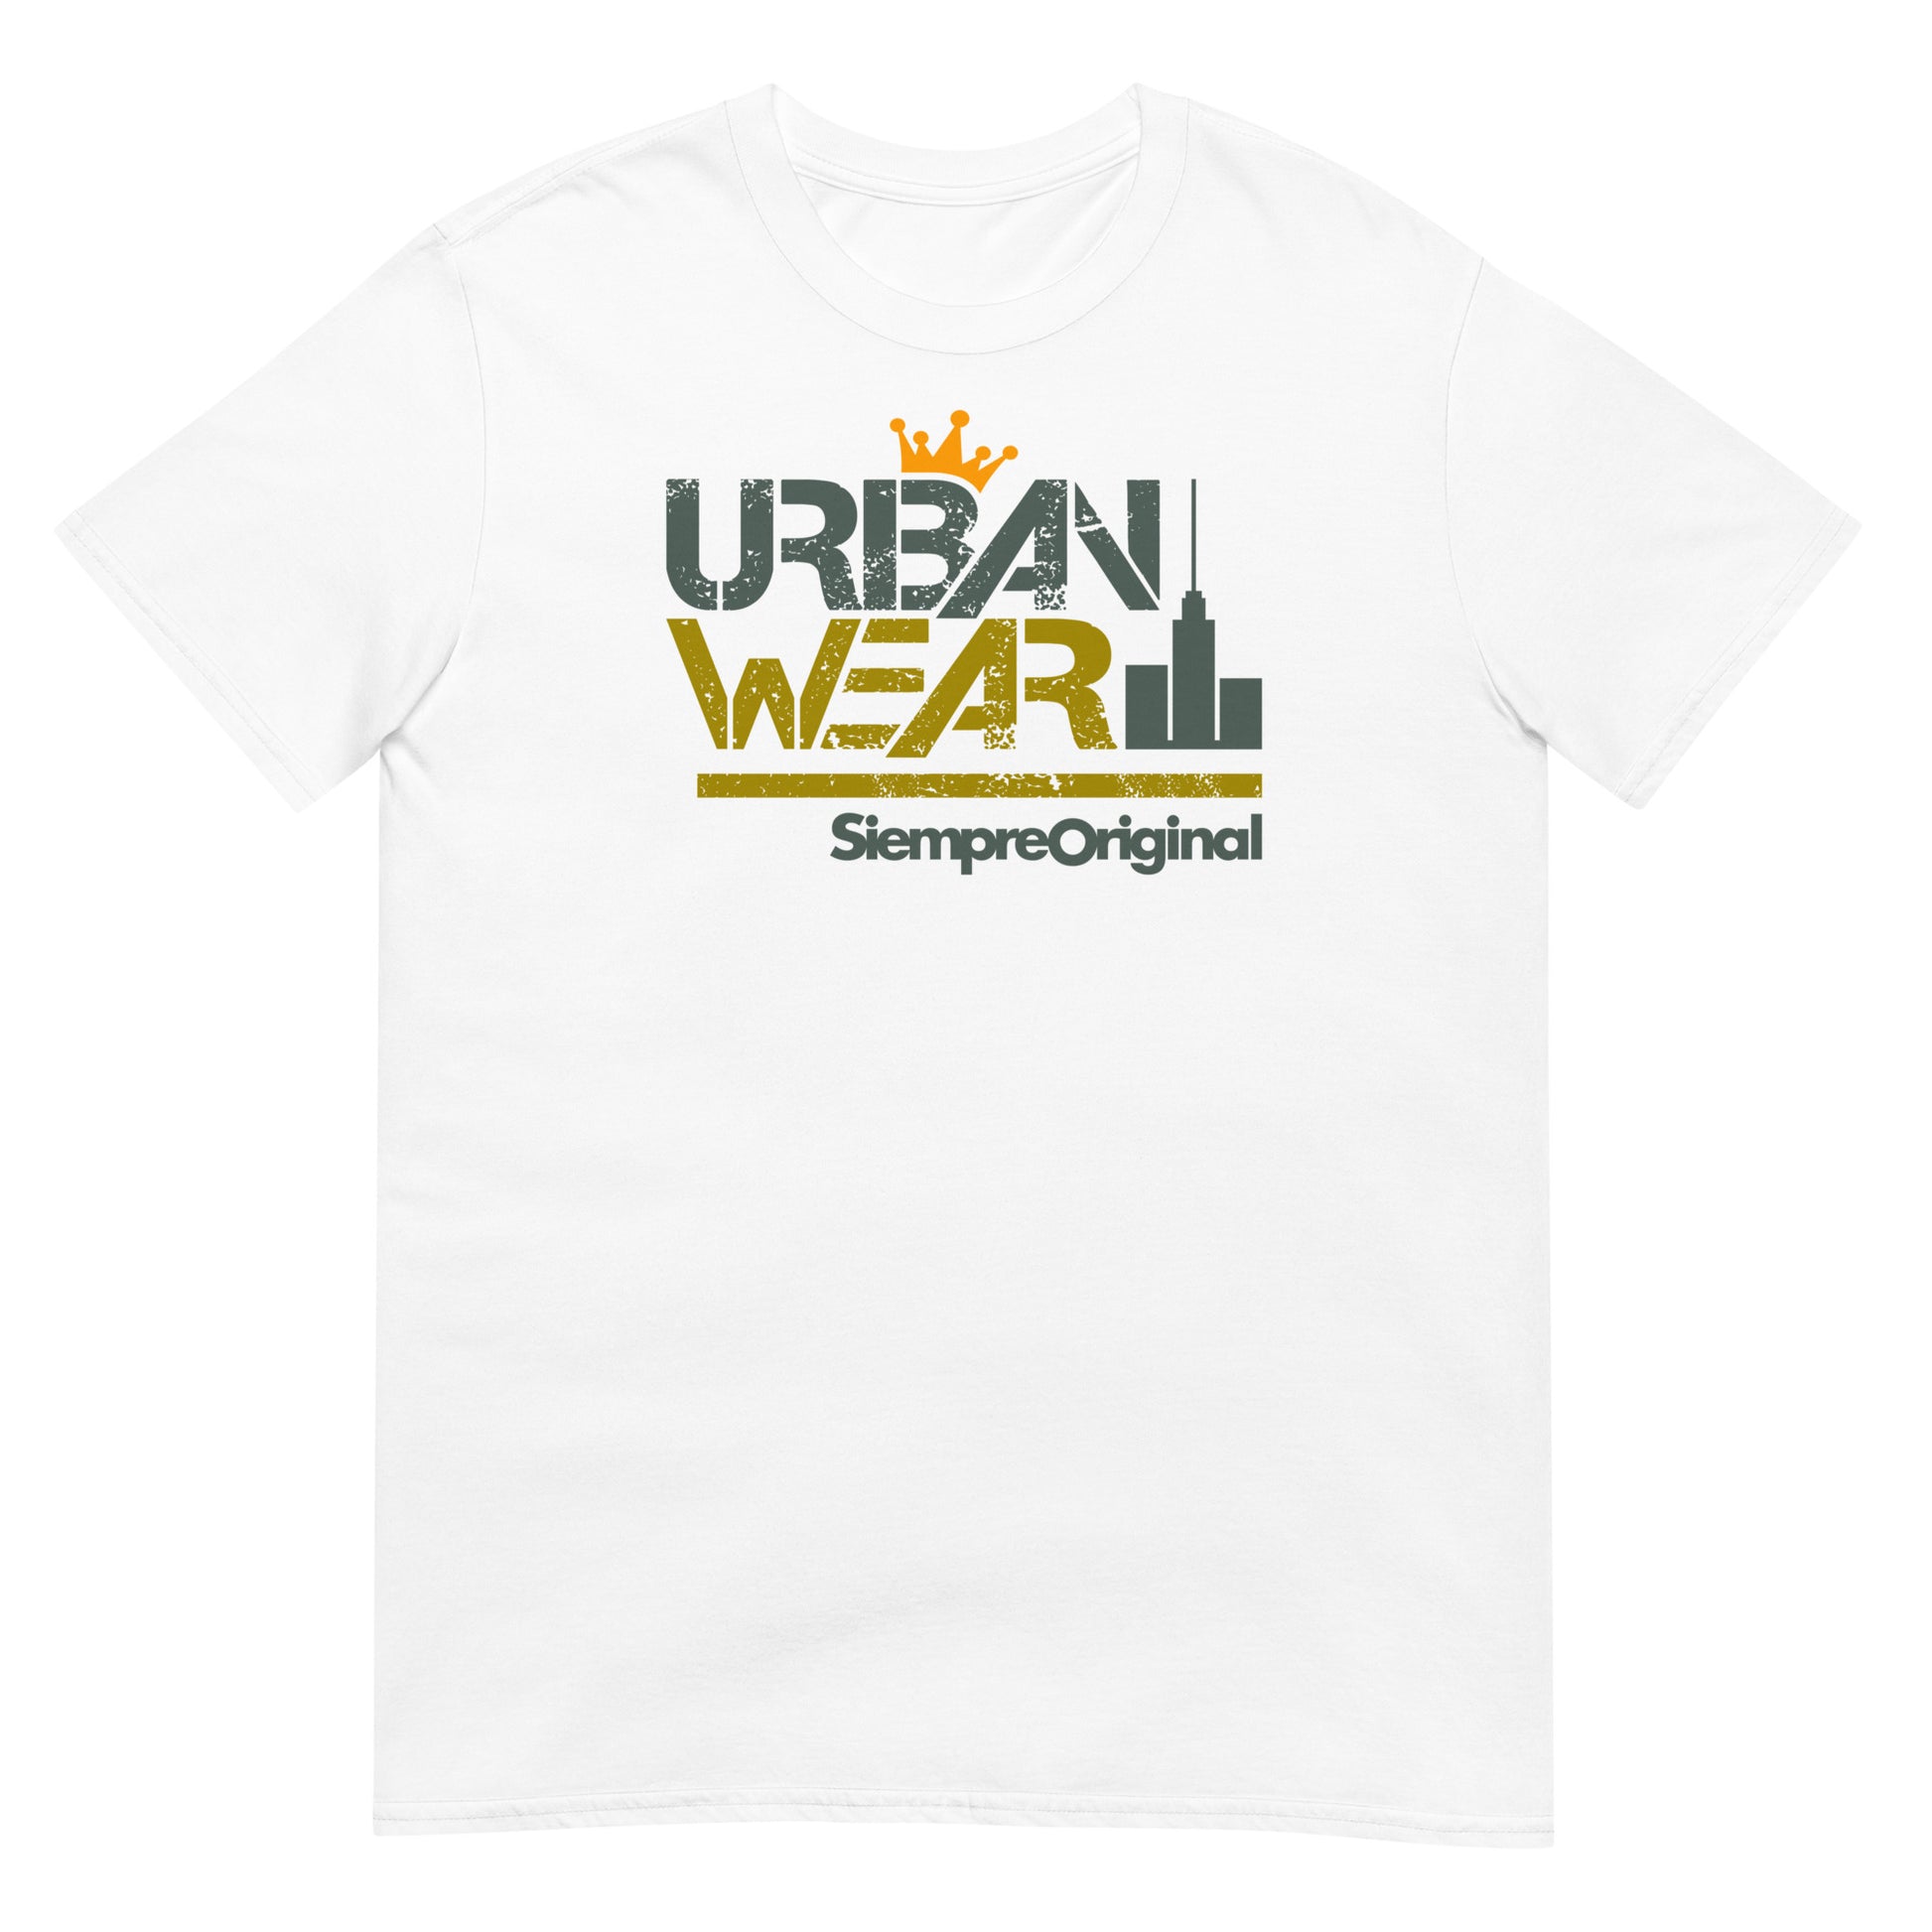 Camiseta Urban Wear de Siempre Original. Color blanco.